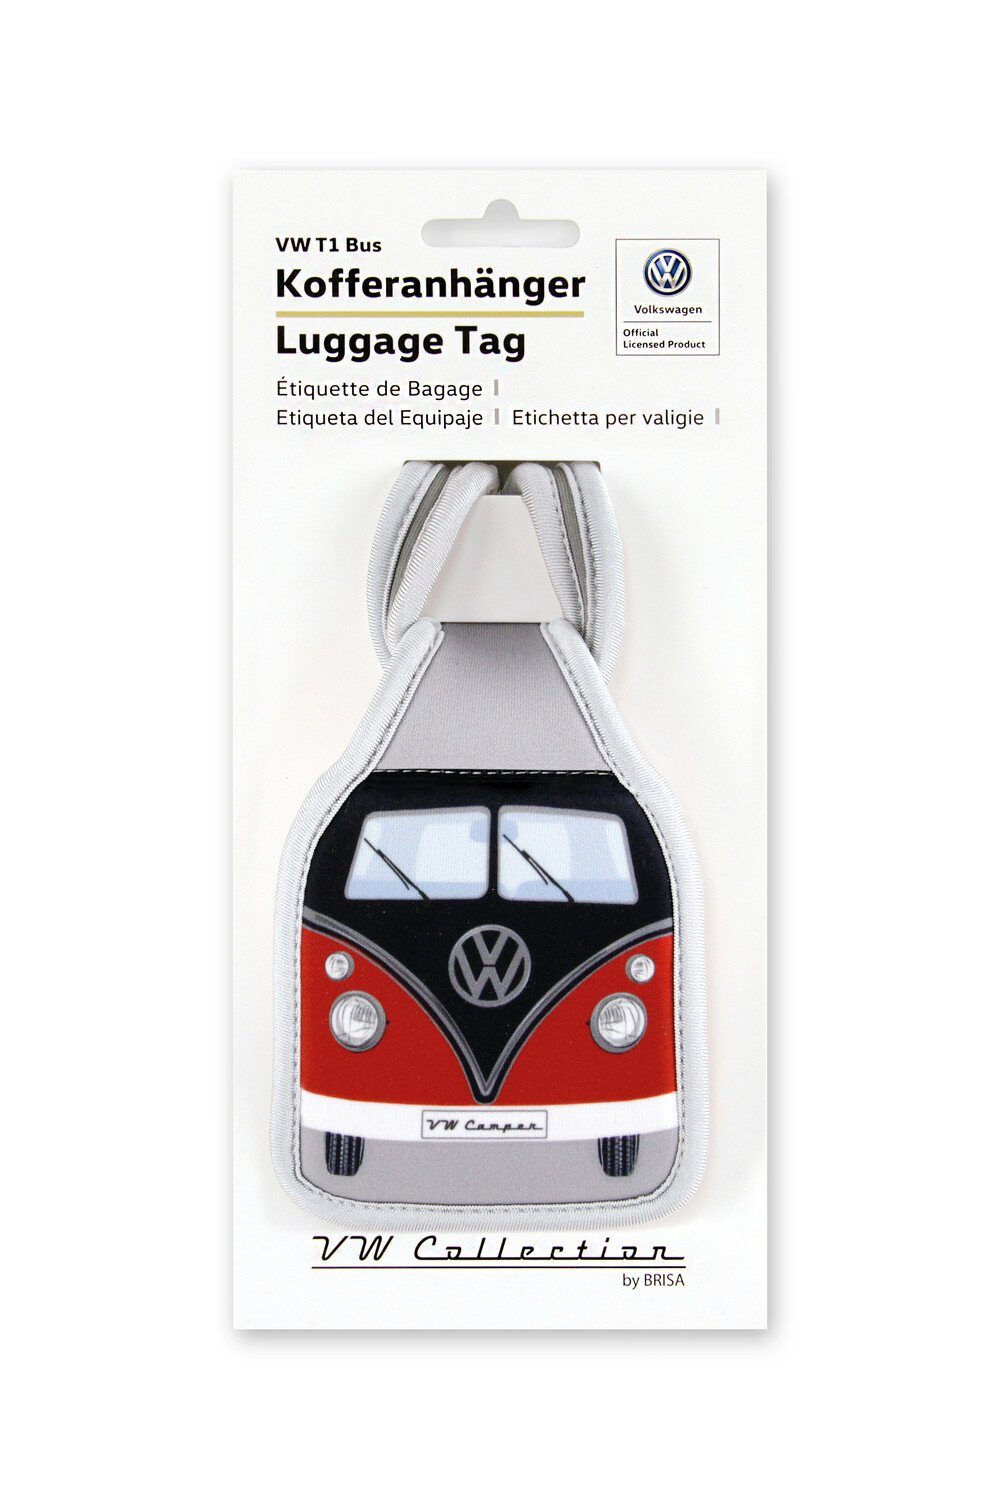 VW Collection by BRISA Gepäckanhänger Kofferanhänger Volkswagen Bulli Adressanhänger Design für Bus VW Robuster Rot/Schwarz im T1 Reisen